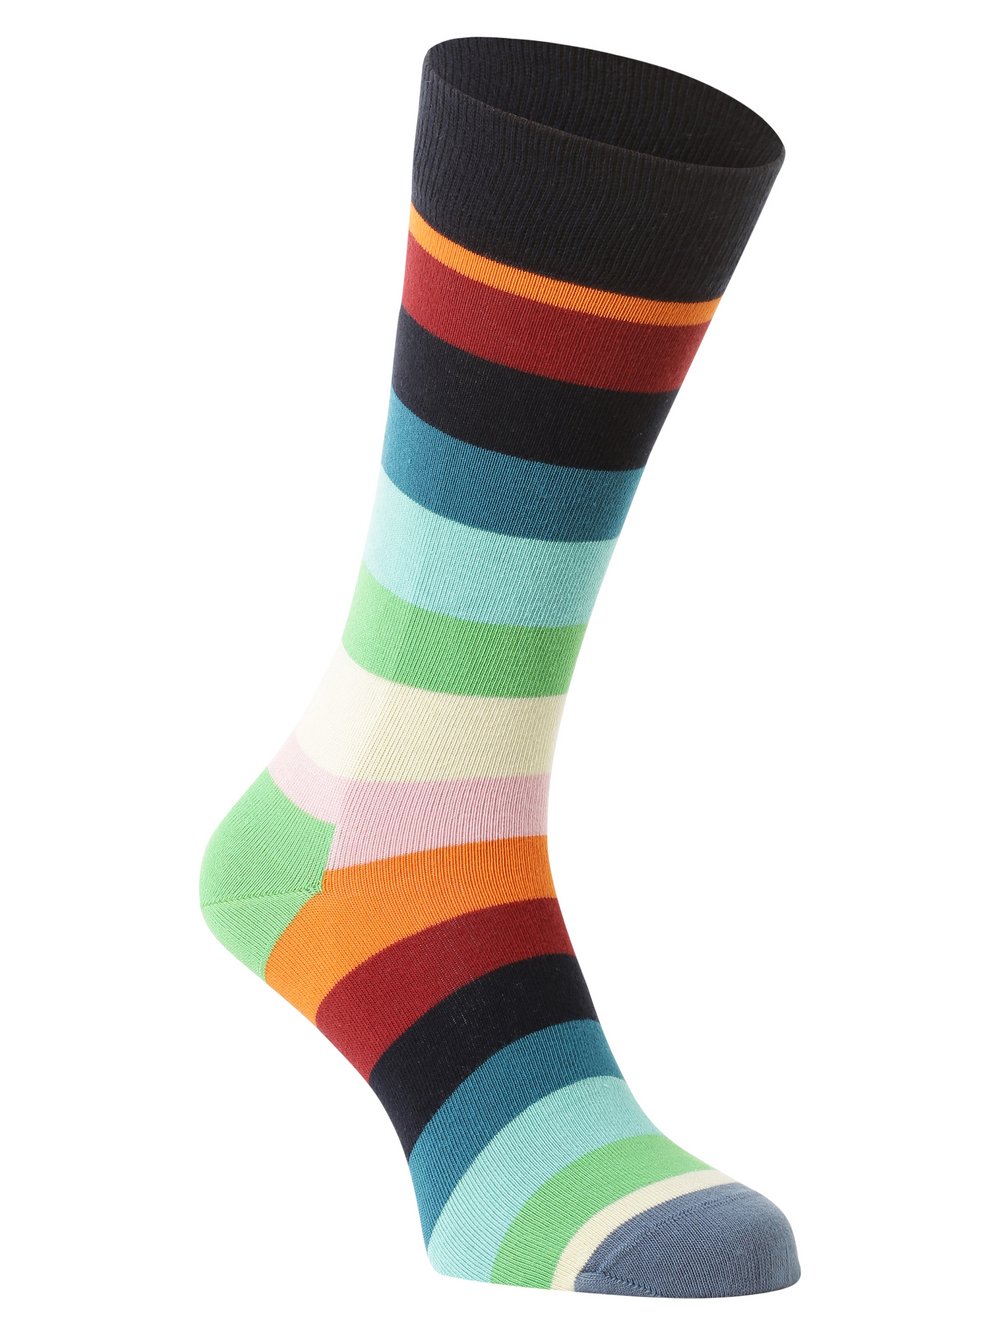 Happy Socks - Skarpety męskie, niebieski|wielokolorowy